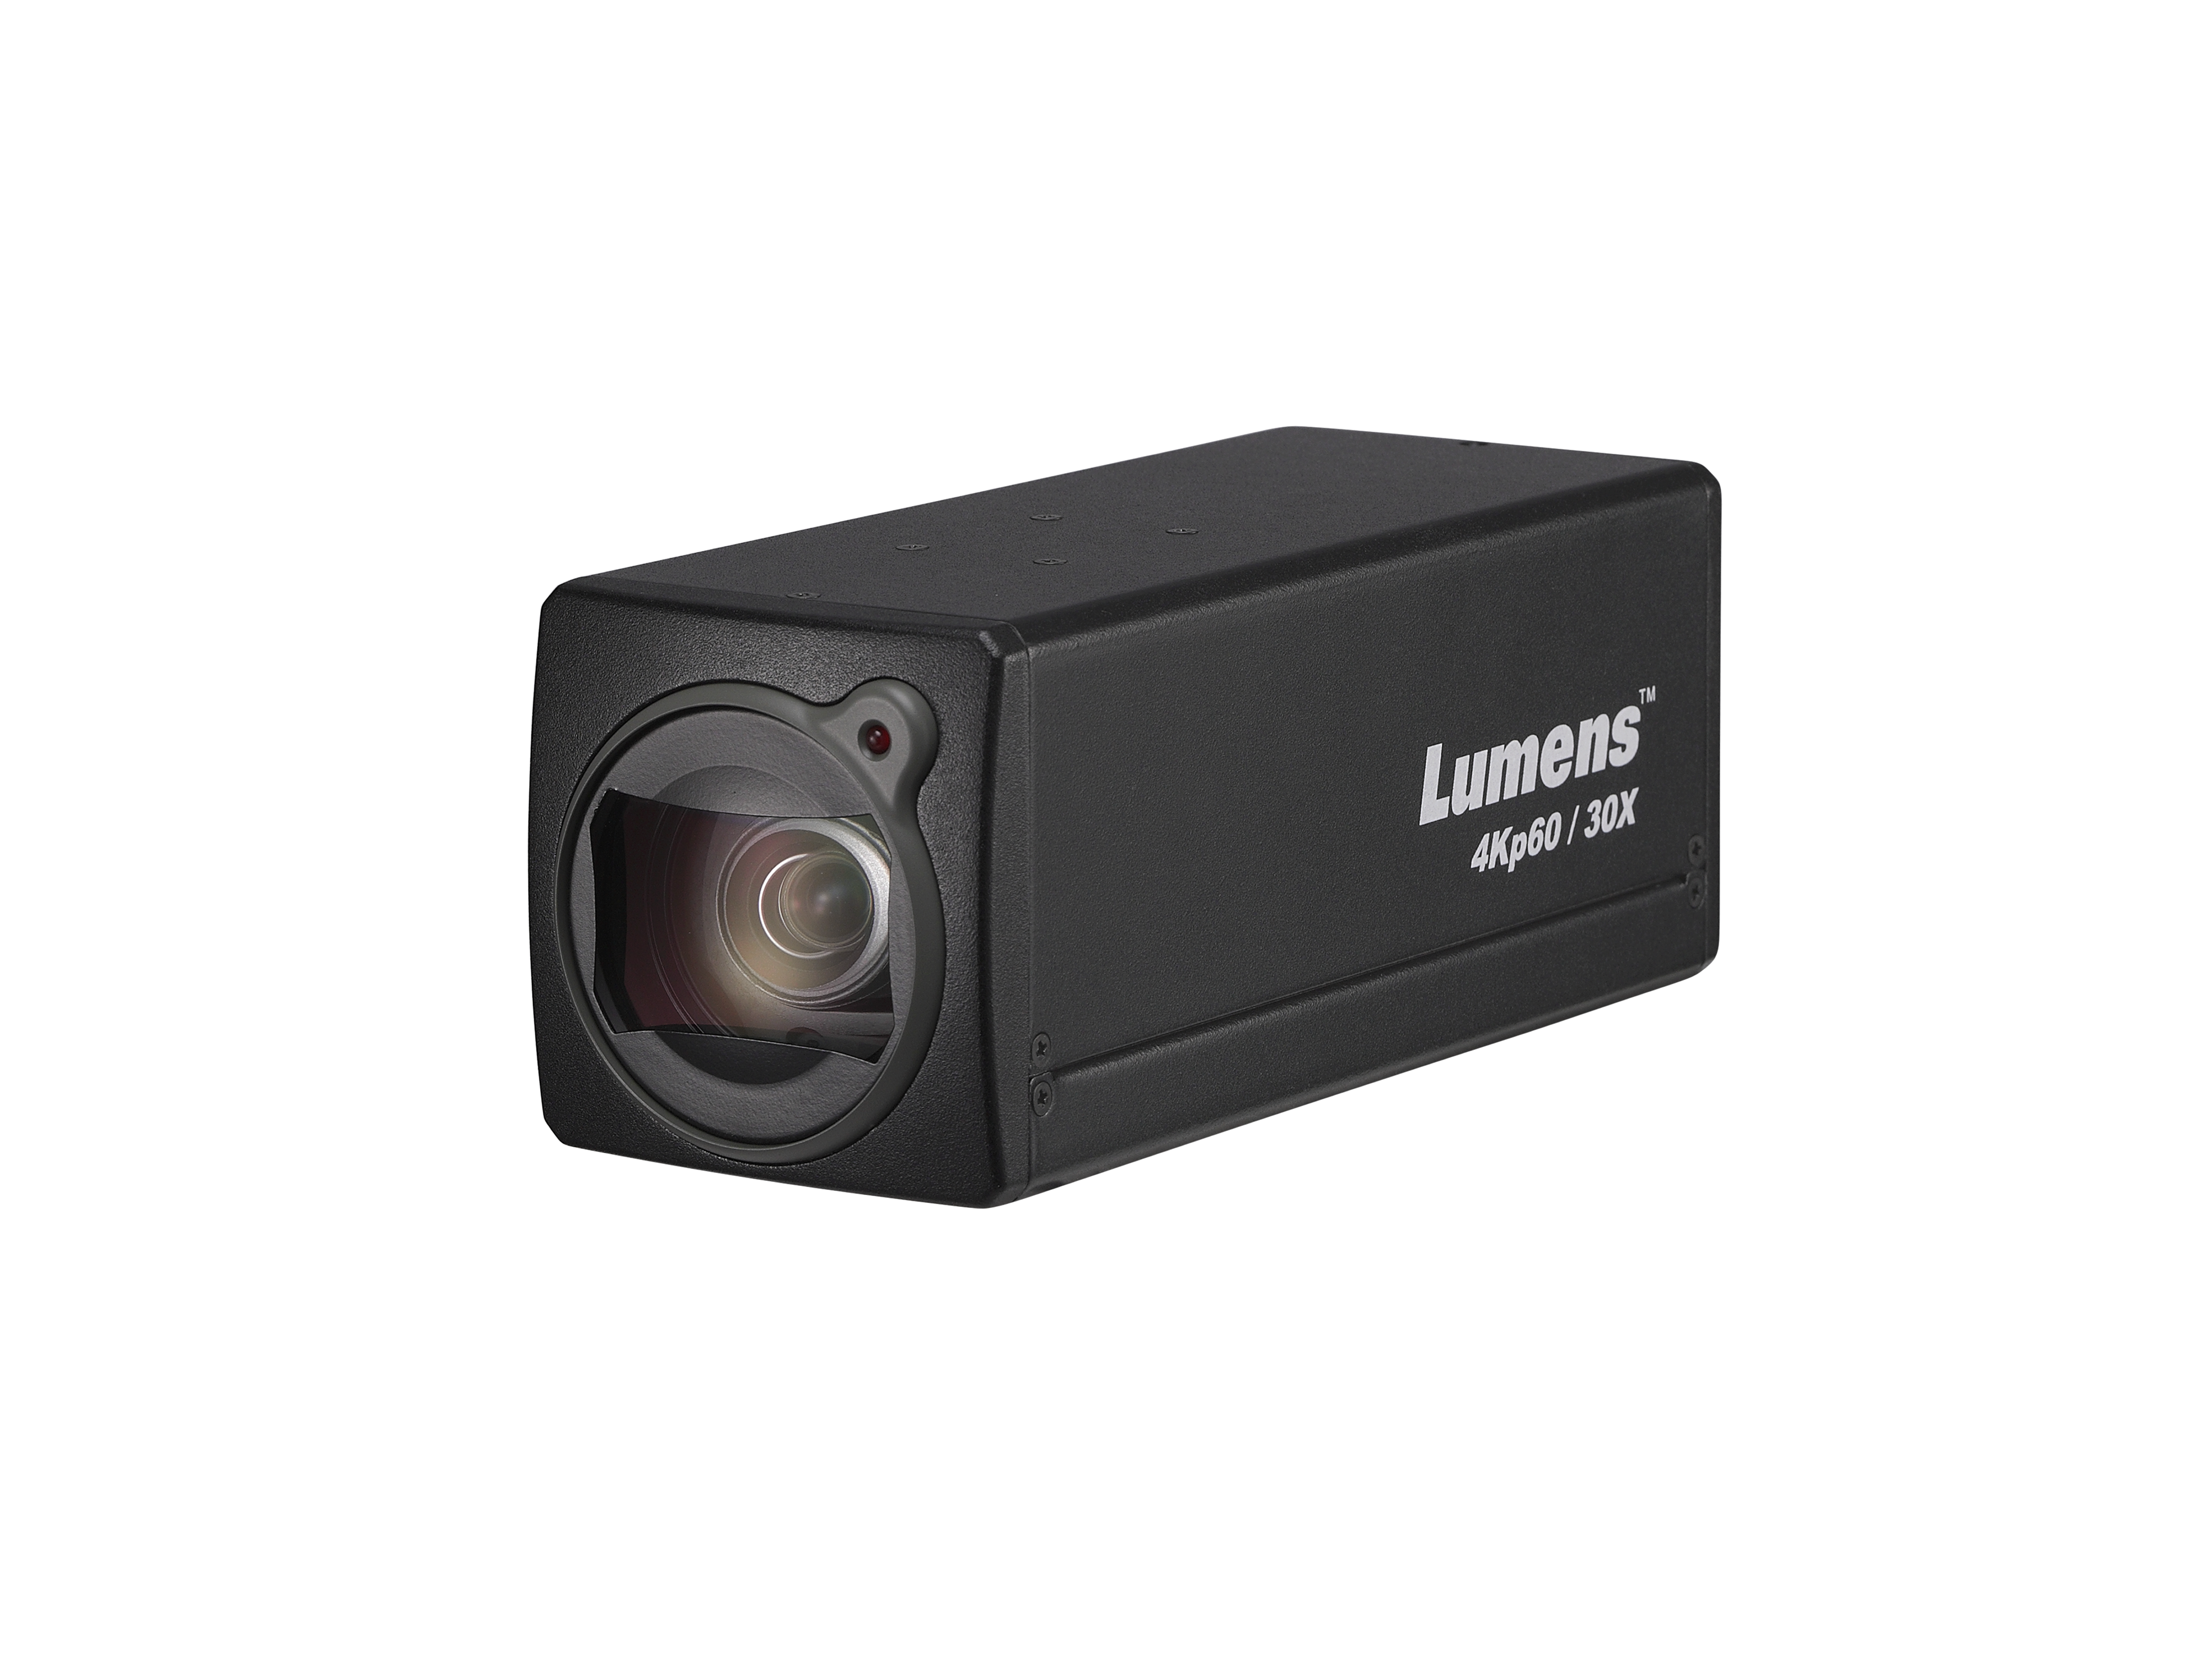 Lumens Boxkamera BC701 schwarz